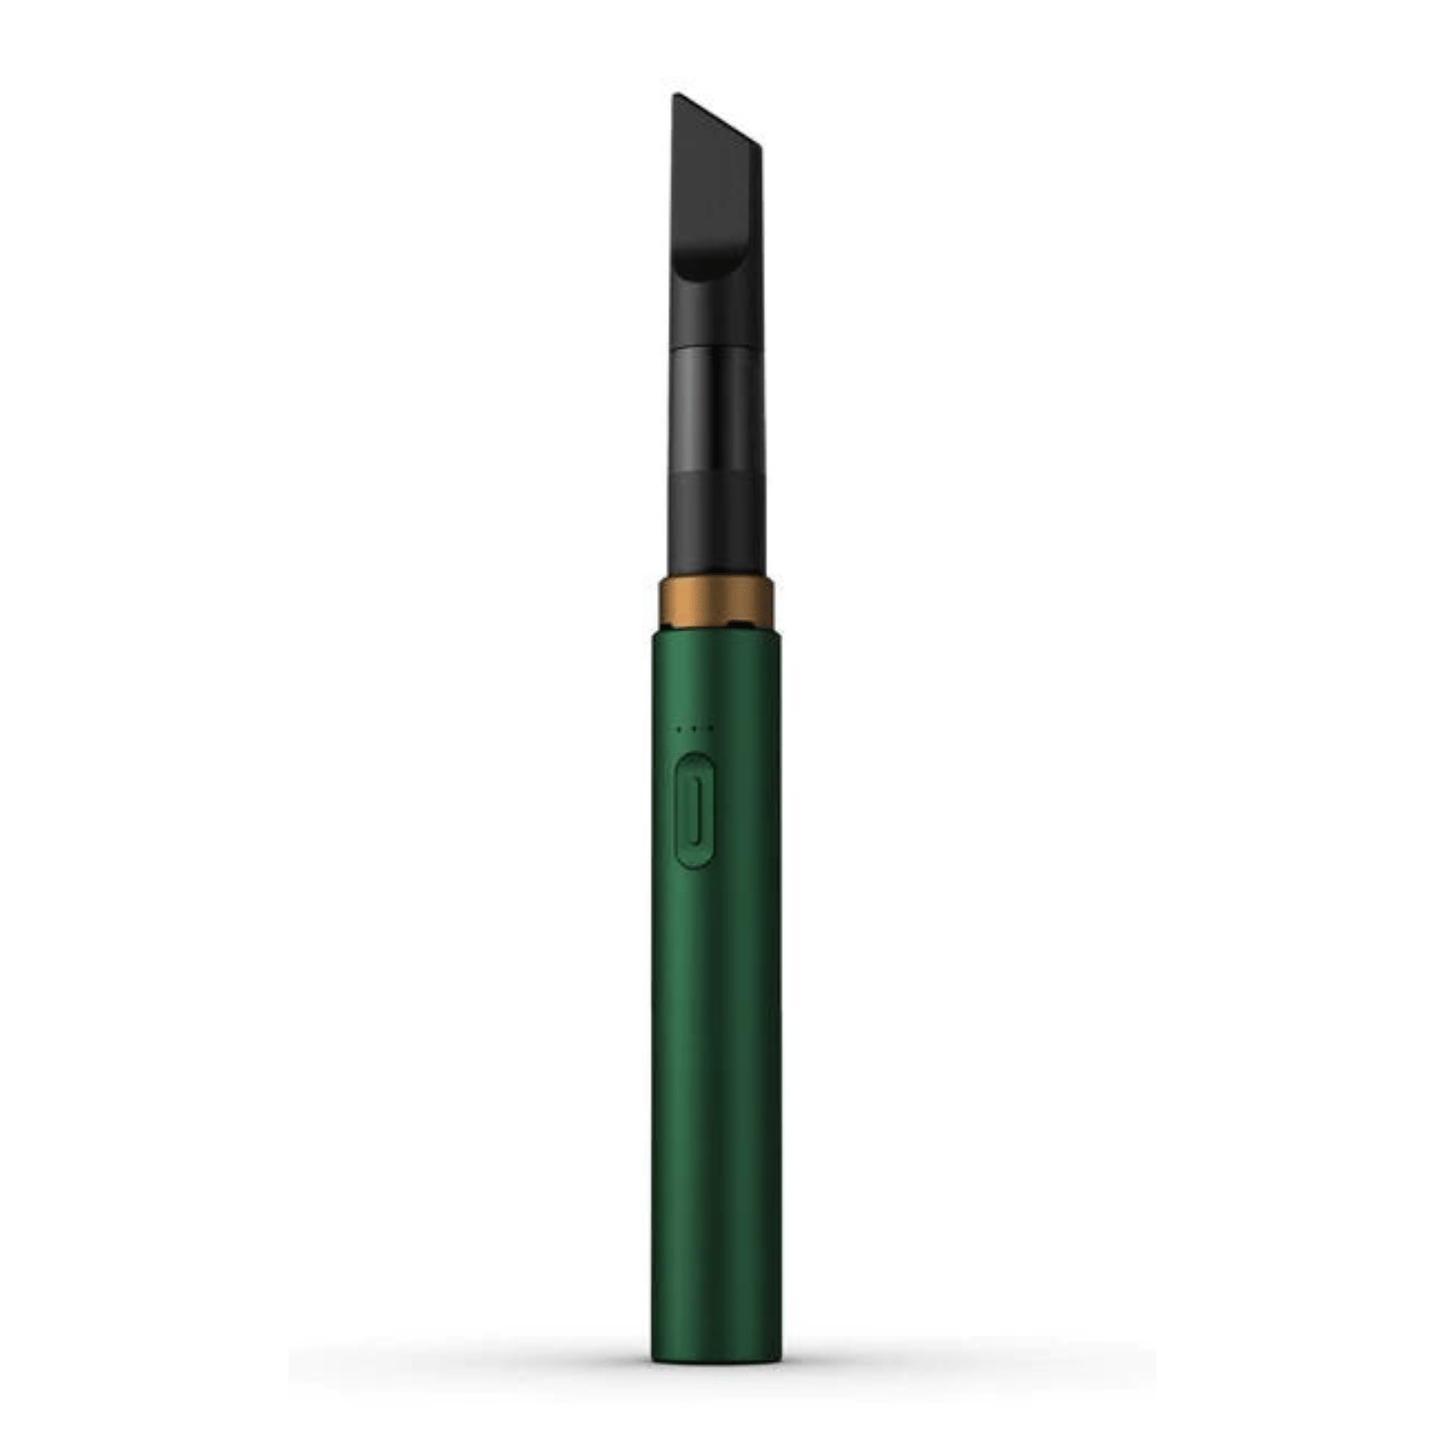 Vessel Green Vessel Core Battery Vessel Core Battery | Cartridge Battery | Best Price | Smoke-King